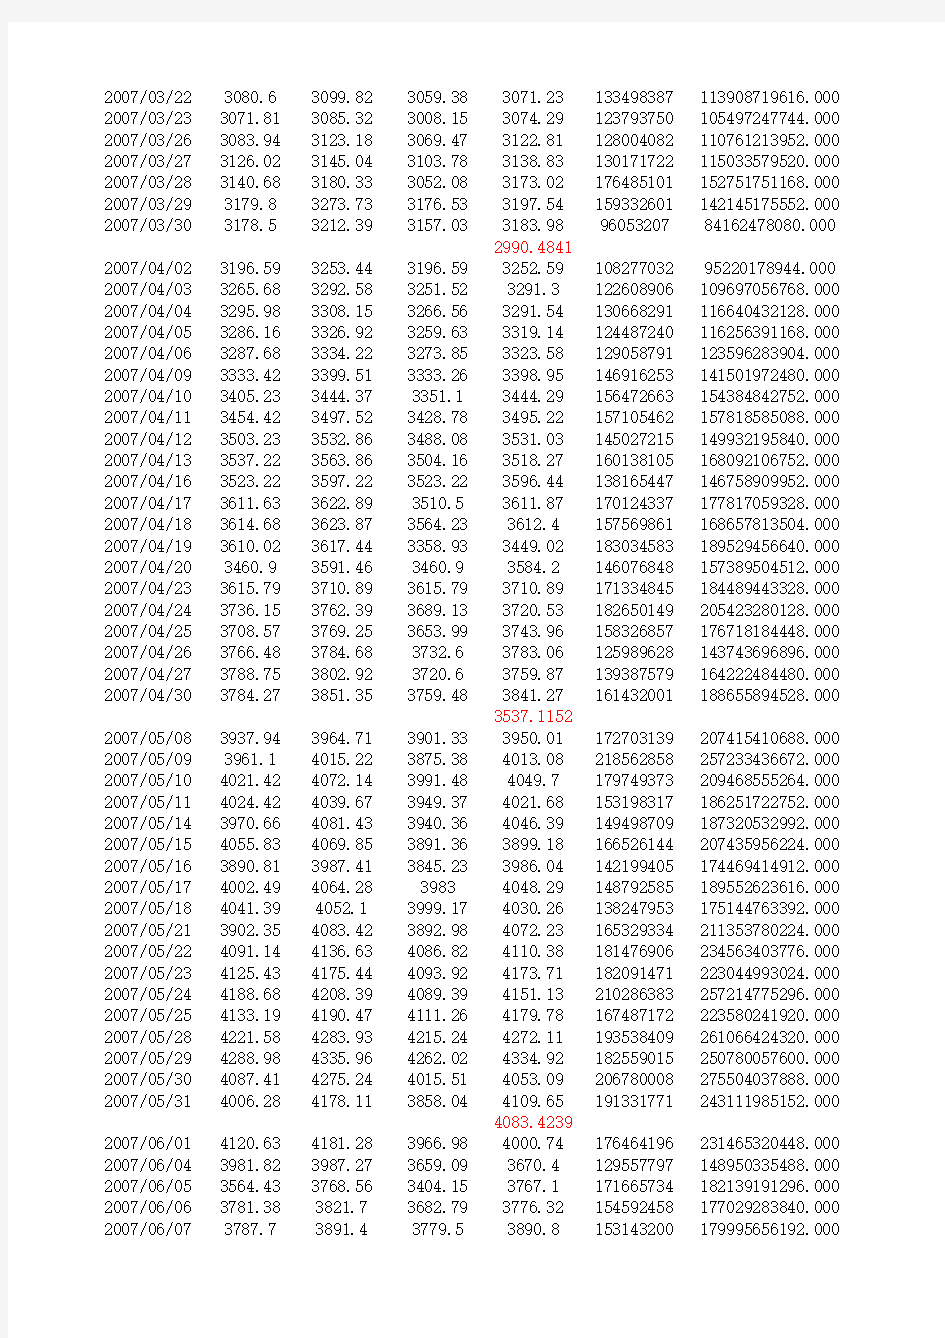 上证指数历史数据(1990年1月-2013年12月)